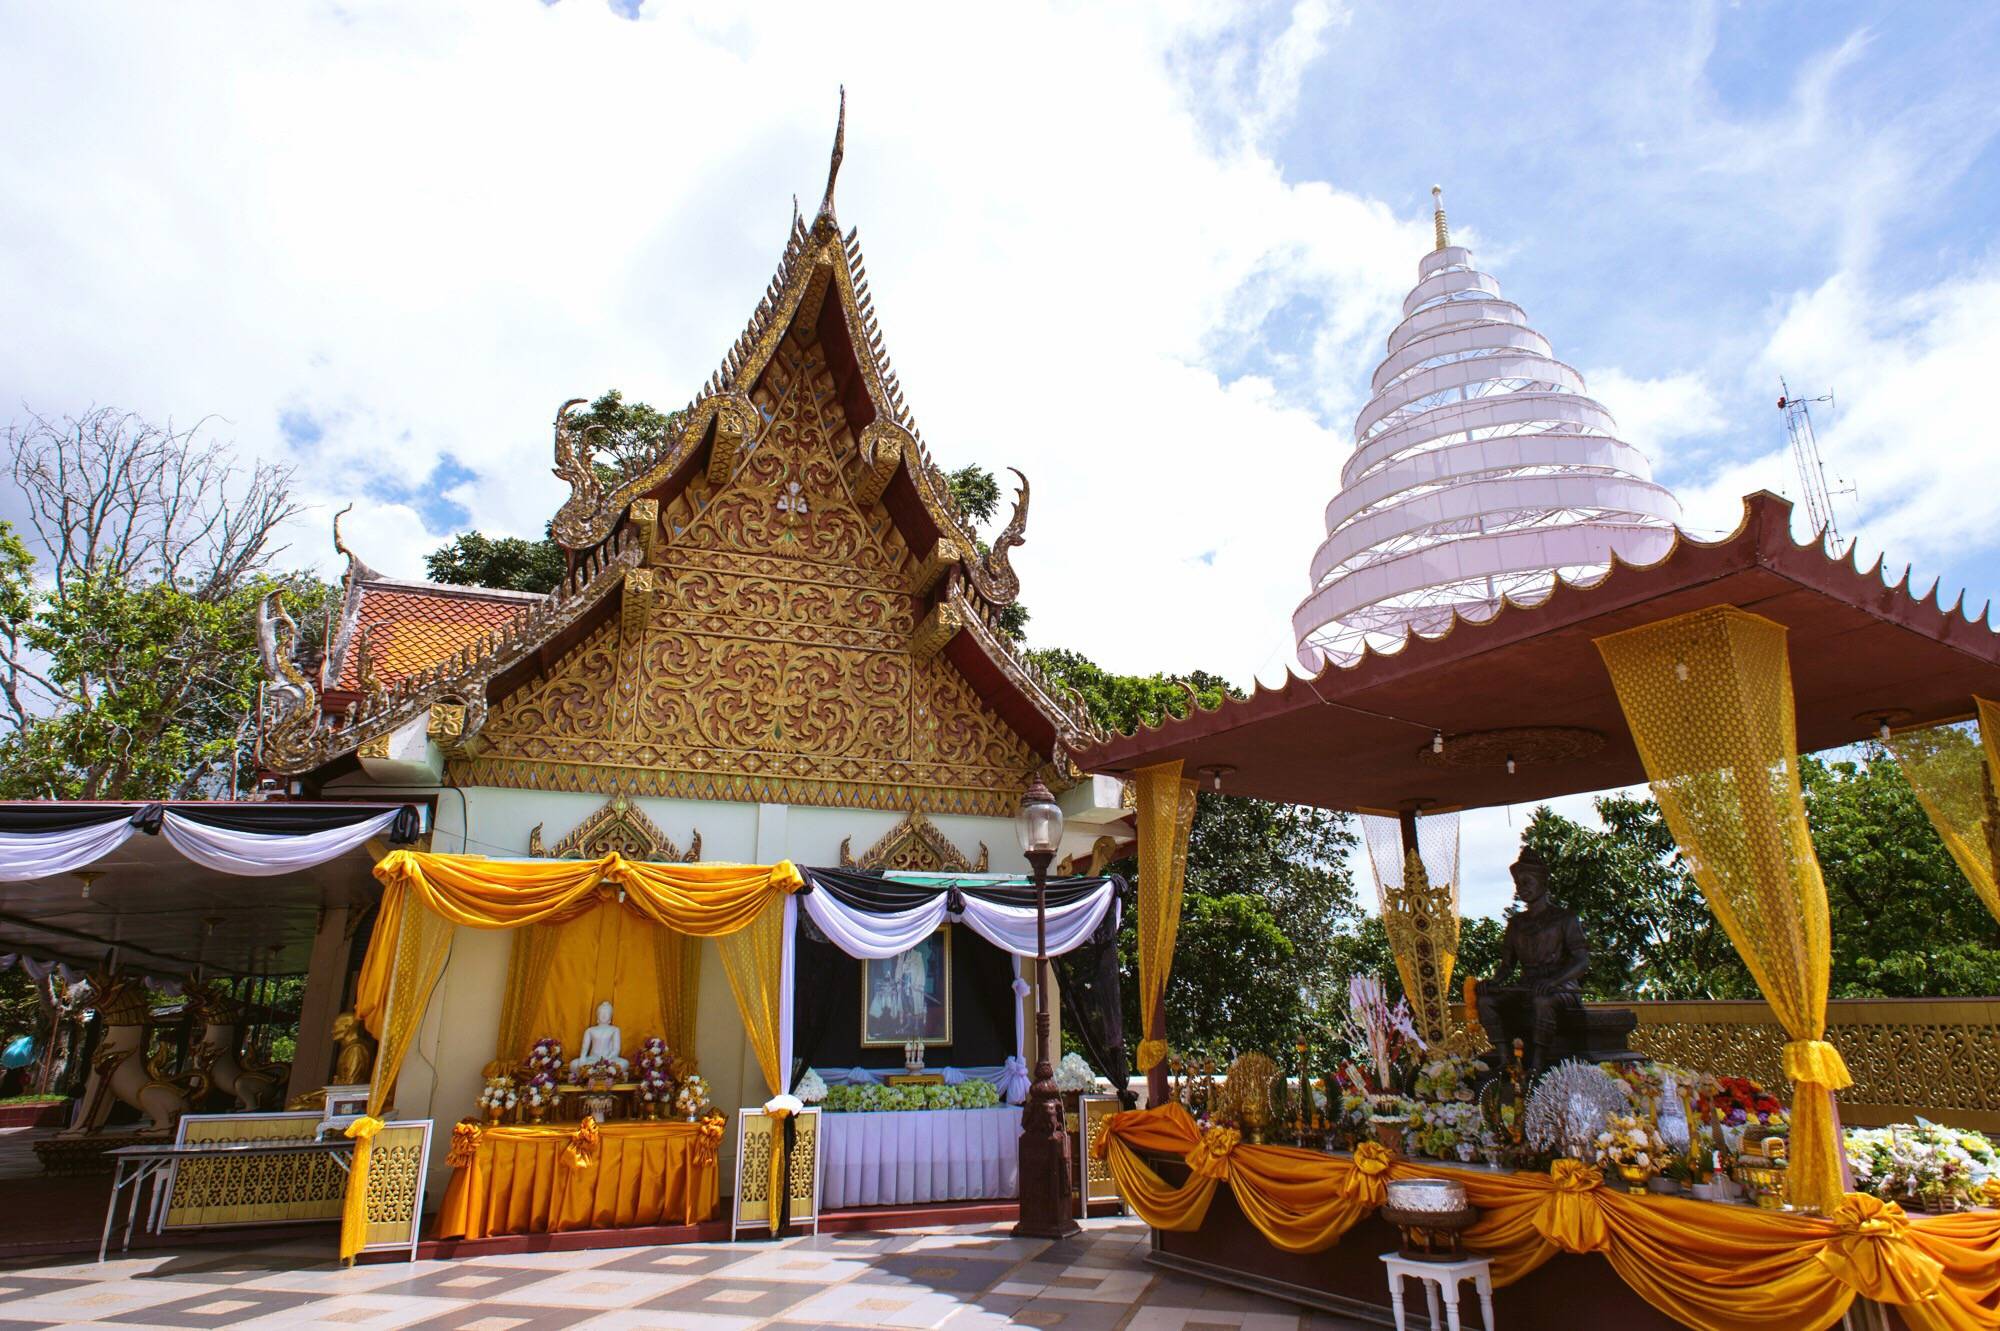 「泰国清莱最有特色的寺庙之一」✅ 泰国清莱最有特色的寺庙之一是